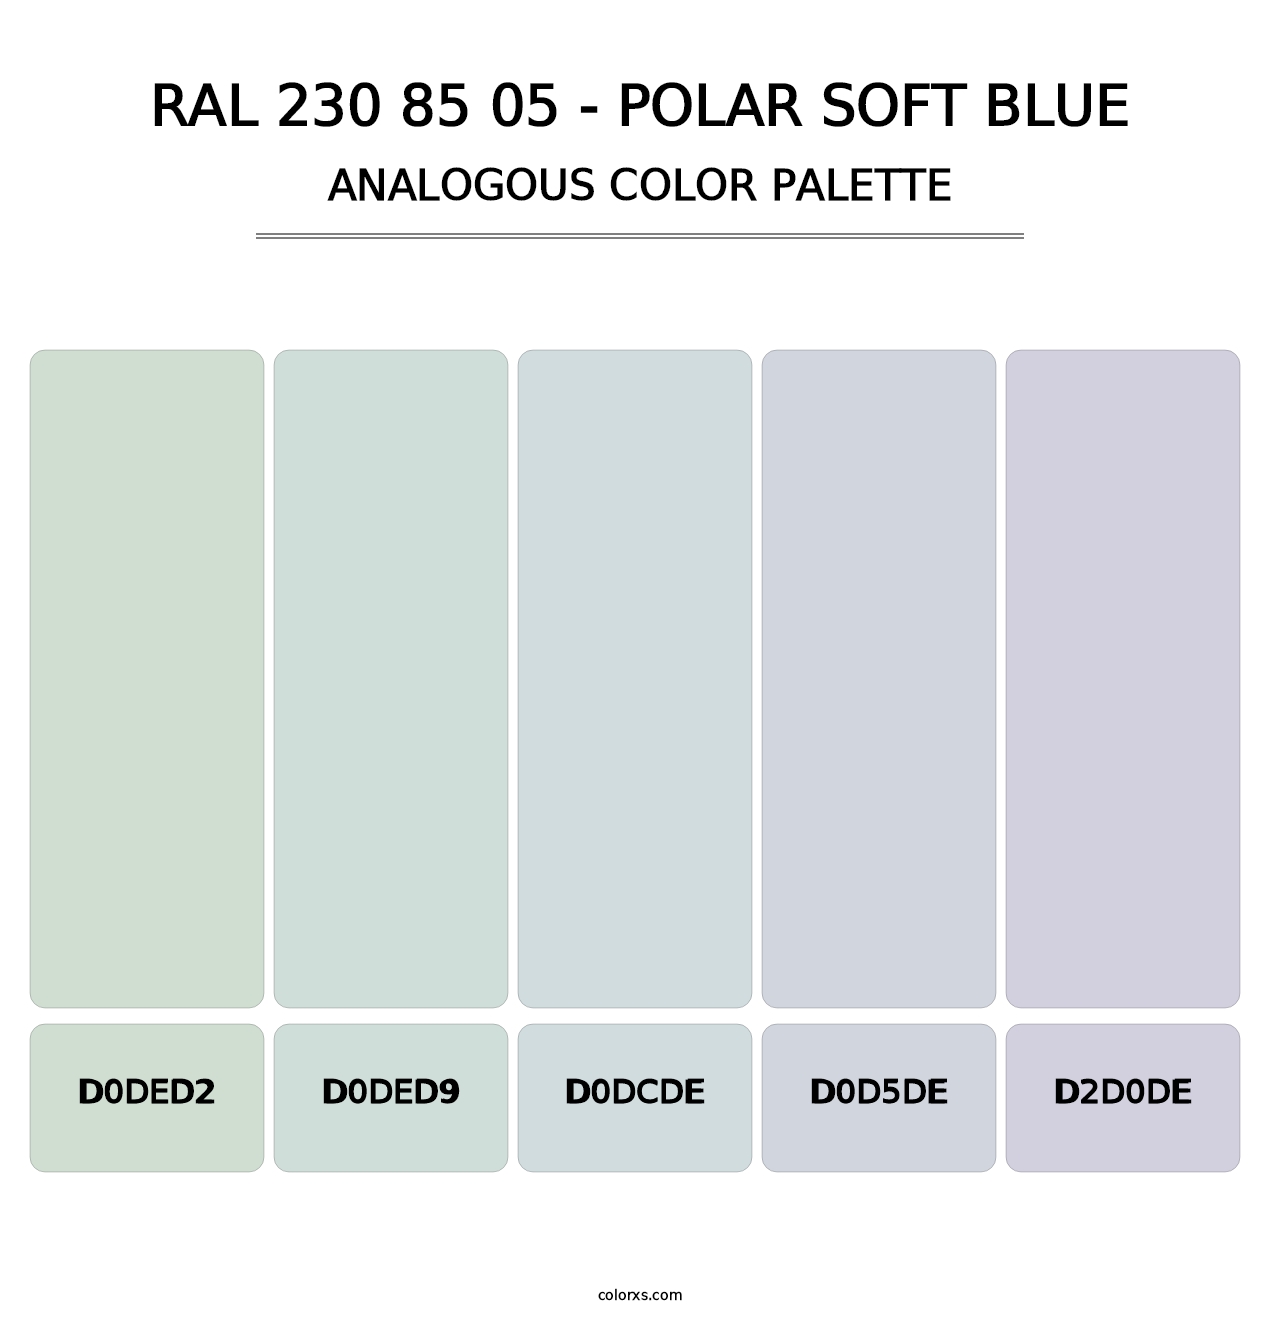 RAL 230 85 05 - Polar Soft Blue - Analogous Color Palette